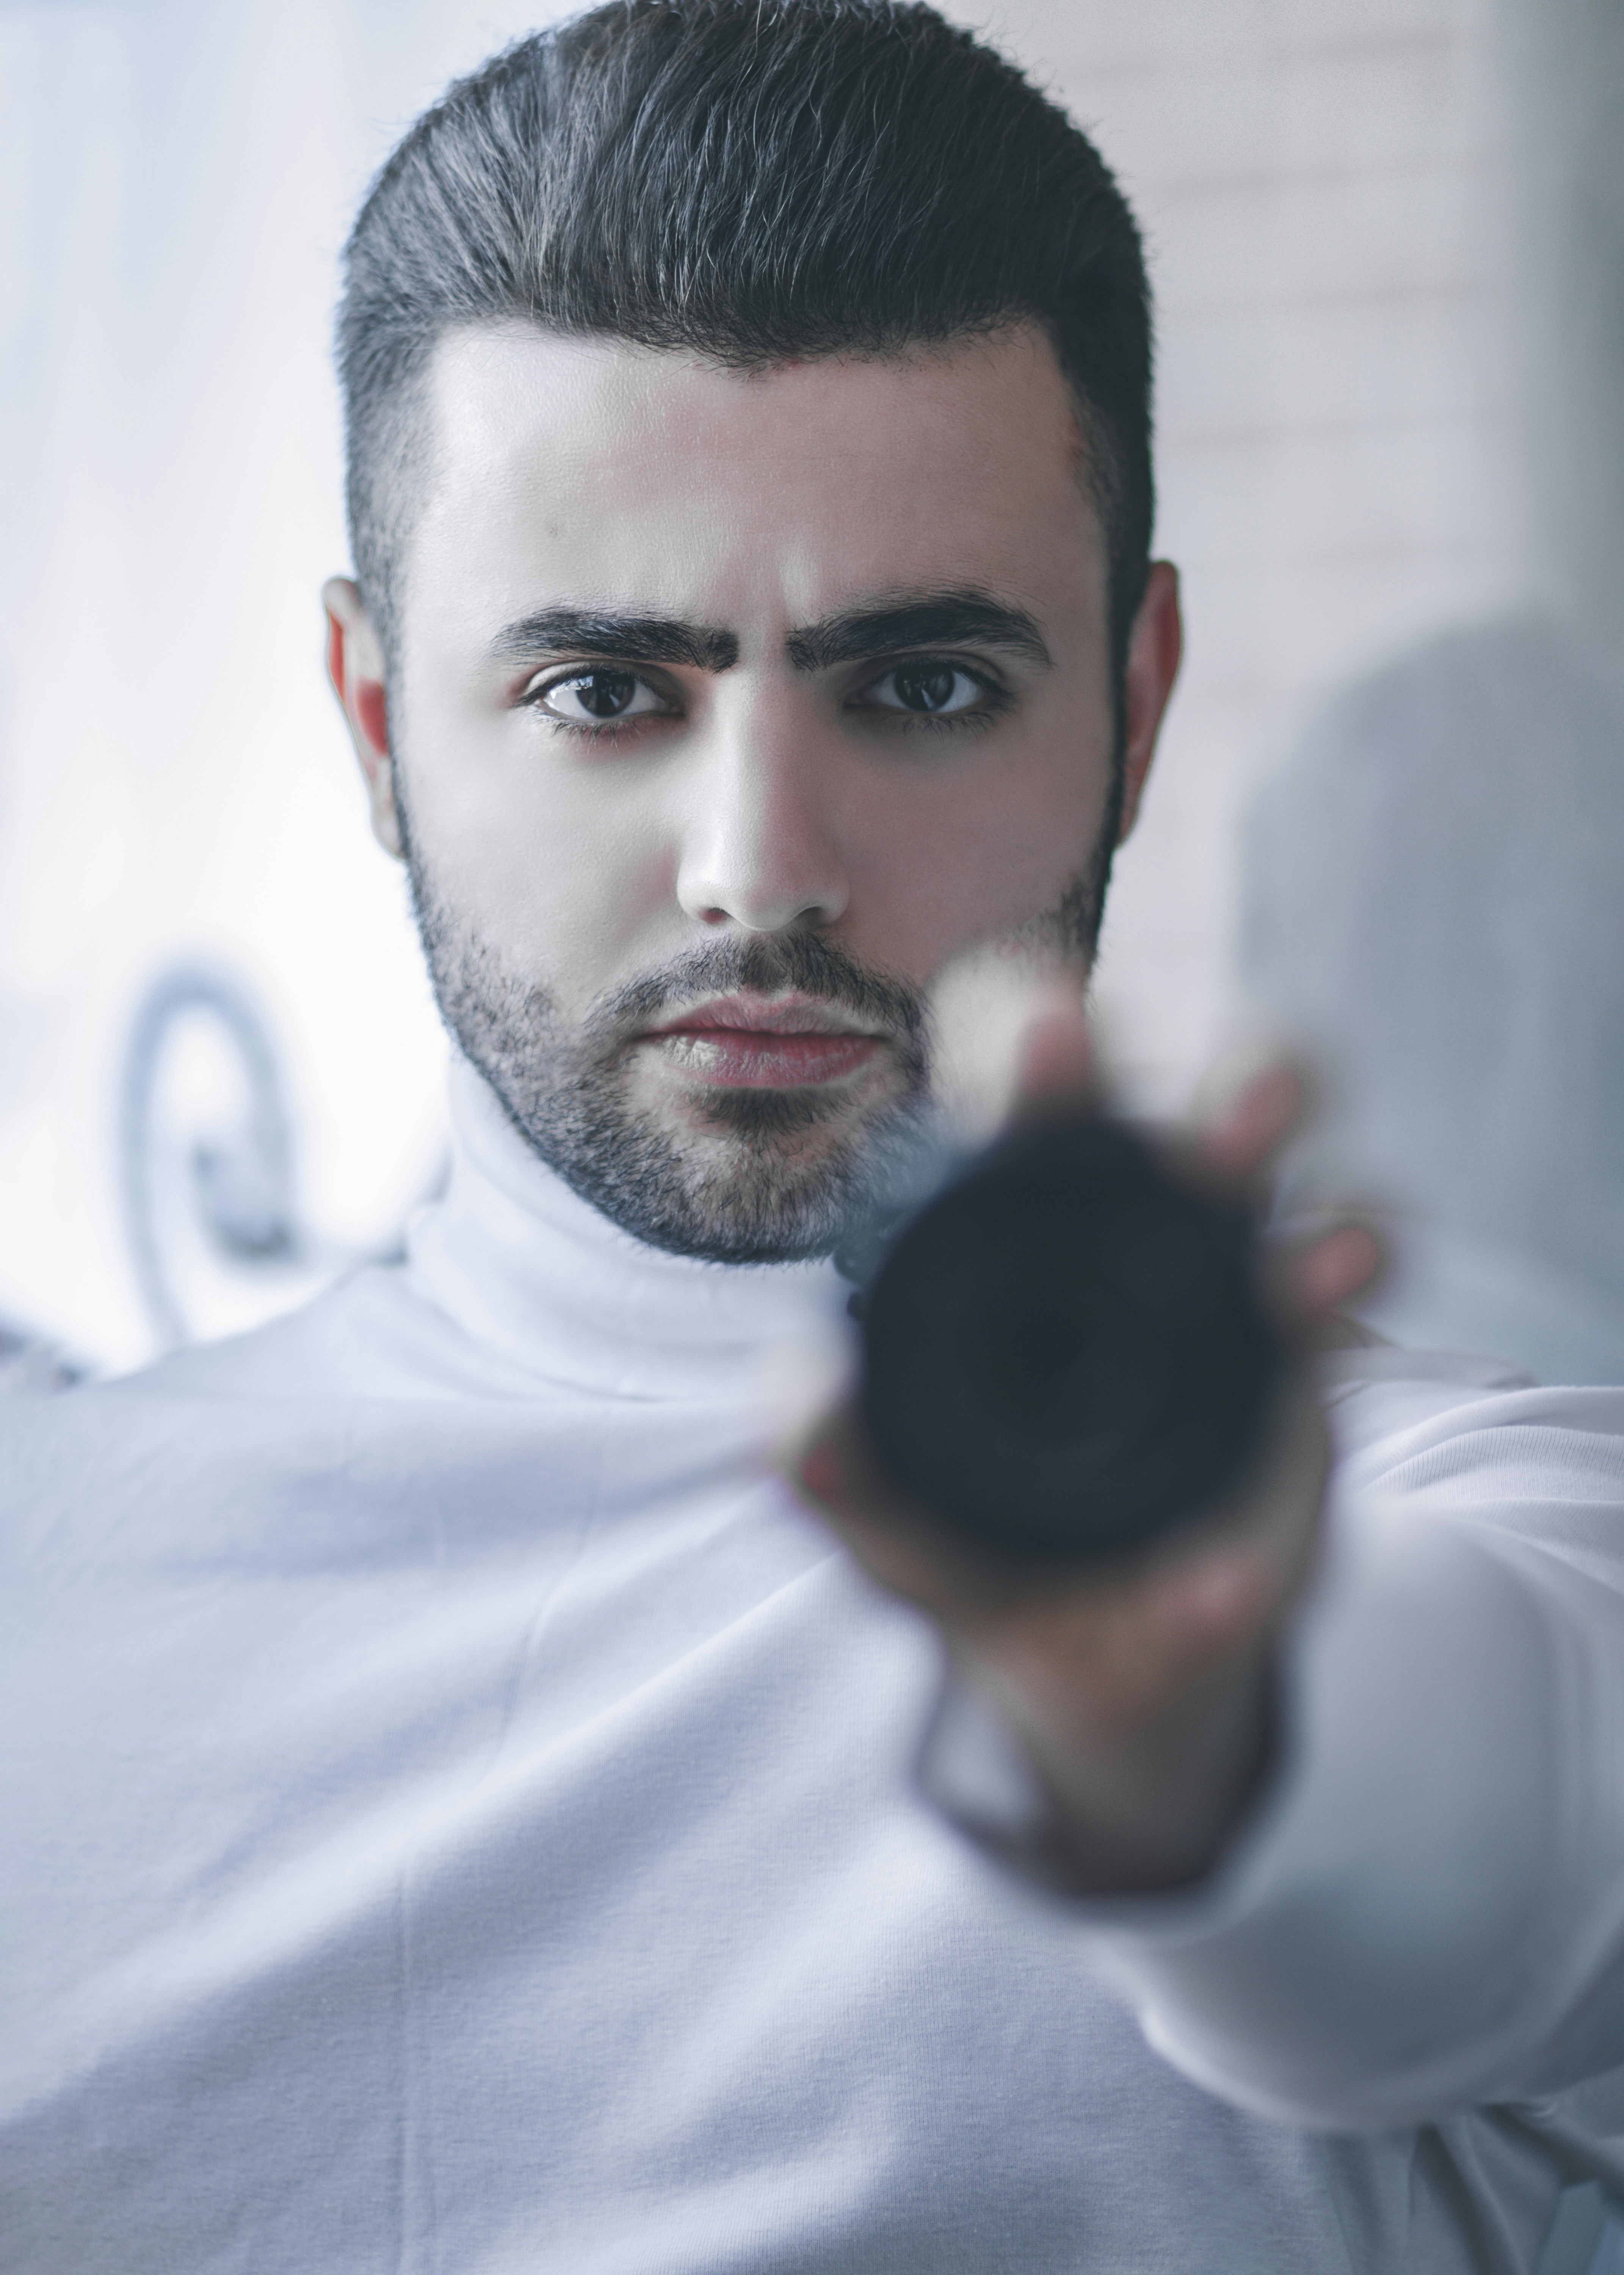 #Portrait #modeling #boy #85mm #85mm18 #iran #tehran